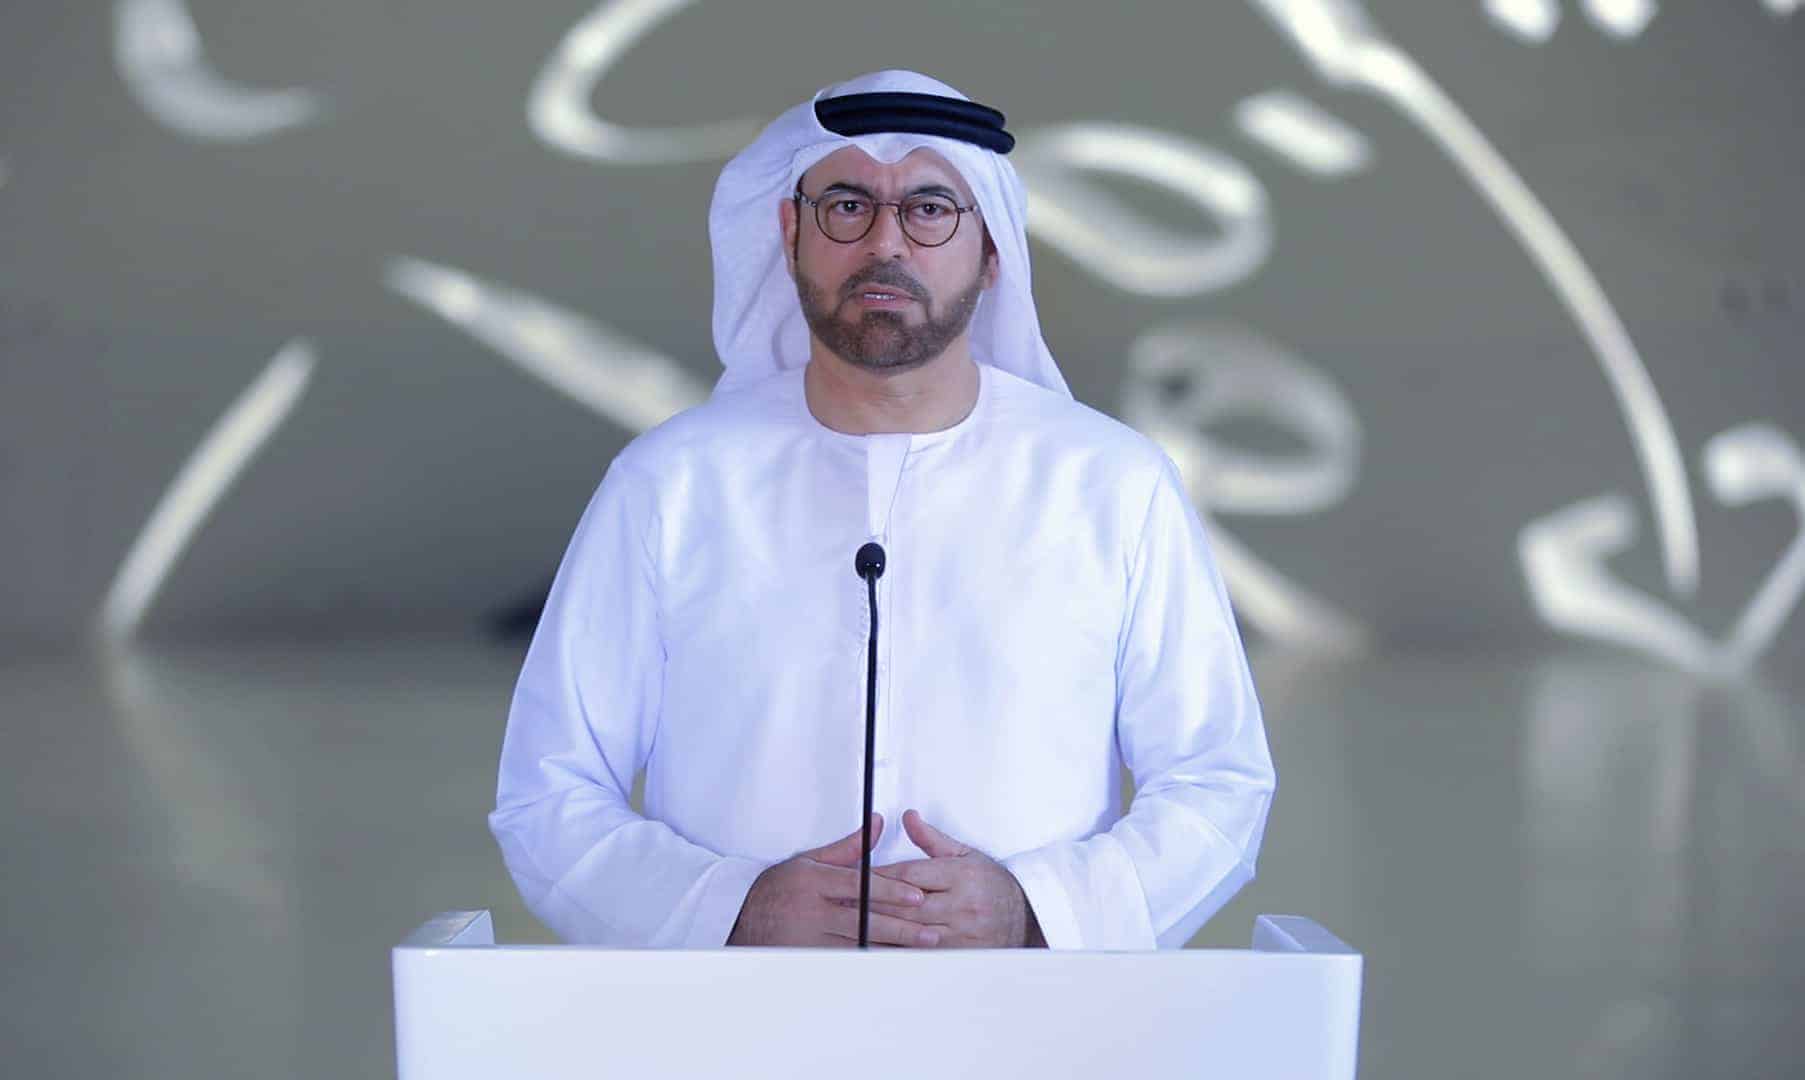 افتتاح متحف المستقبل – الكلمة الرئيسية معالي محمد عبدالله القرقاوي رئيس متحف المستقبل